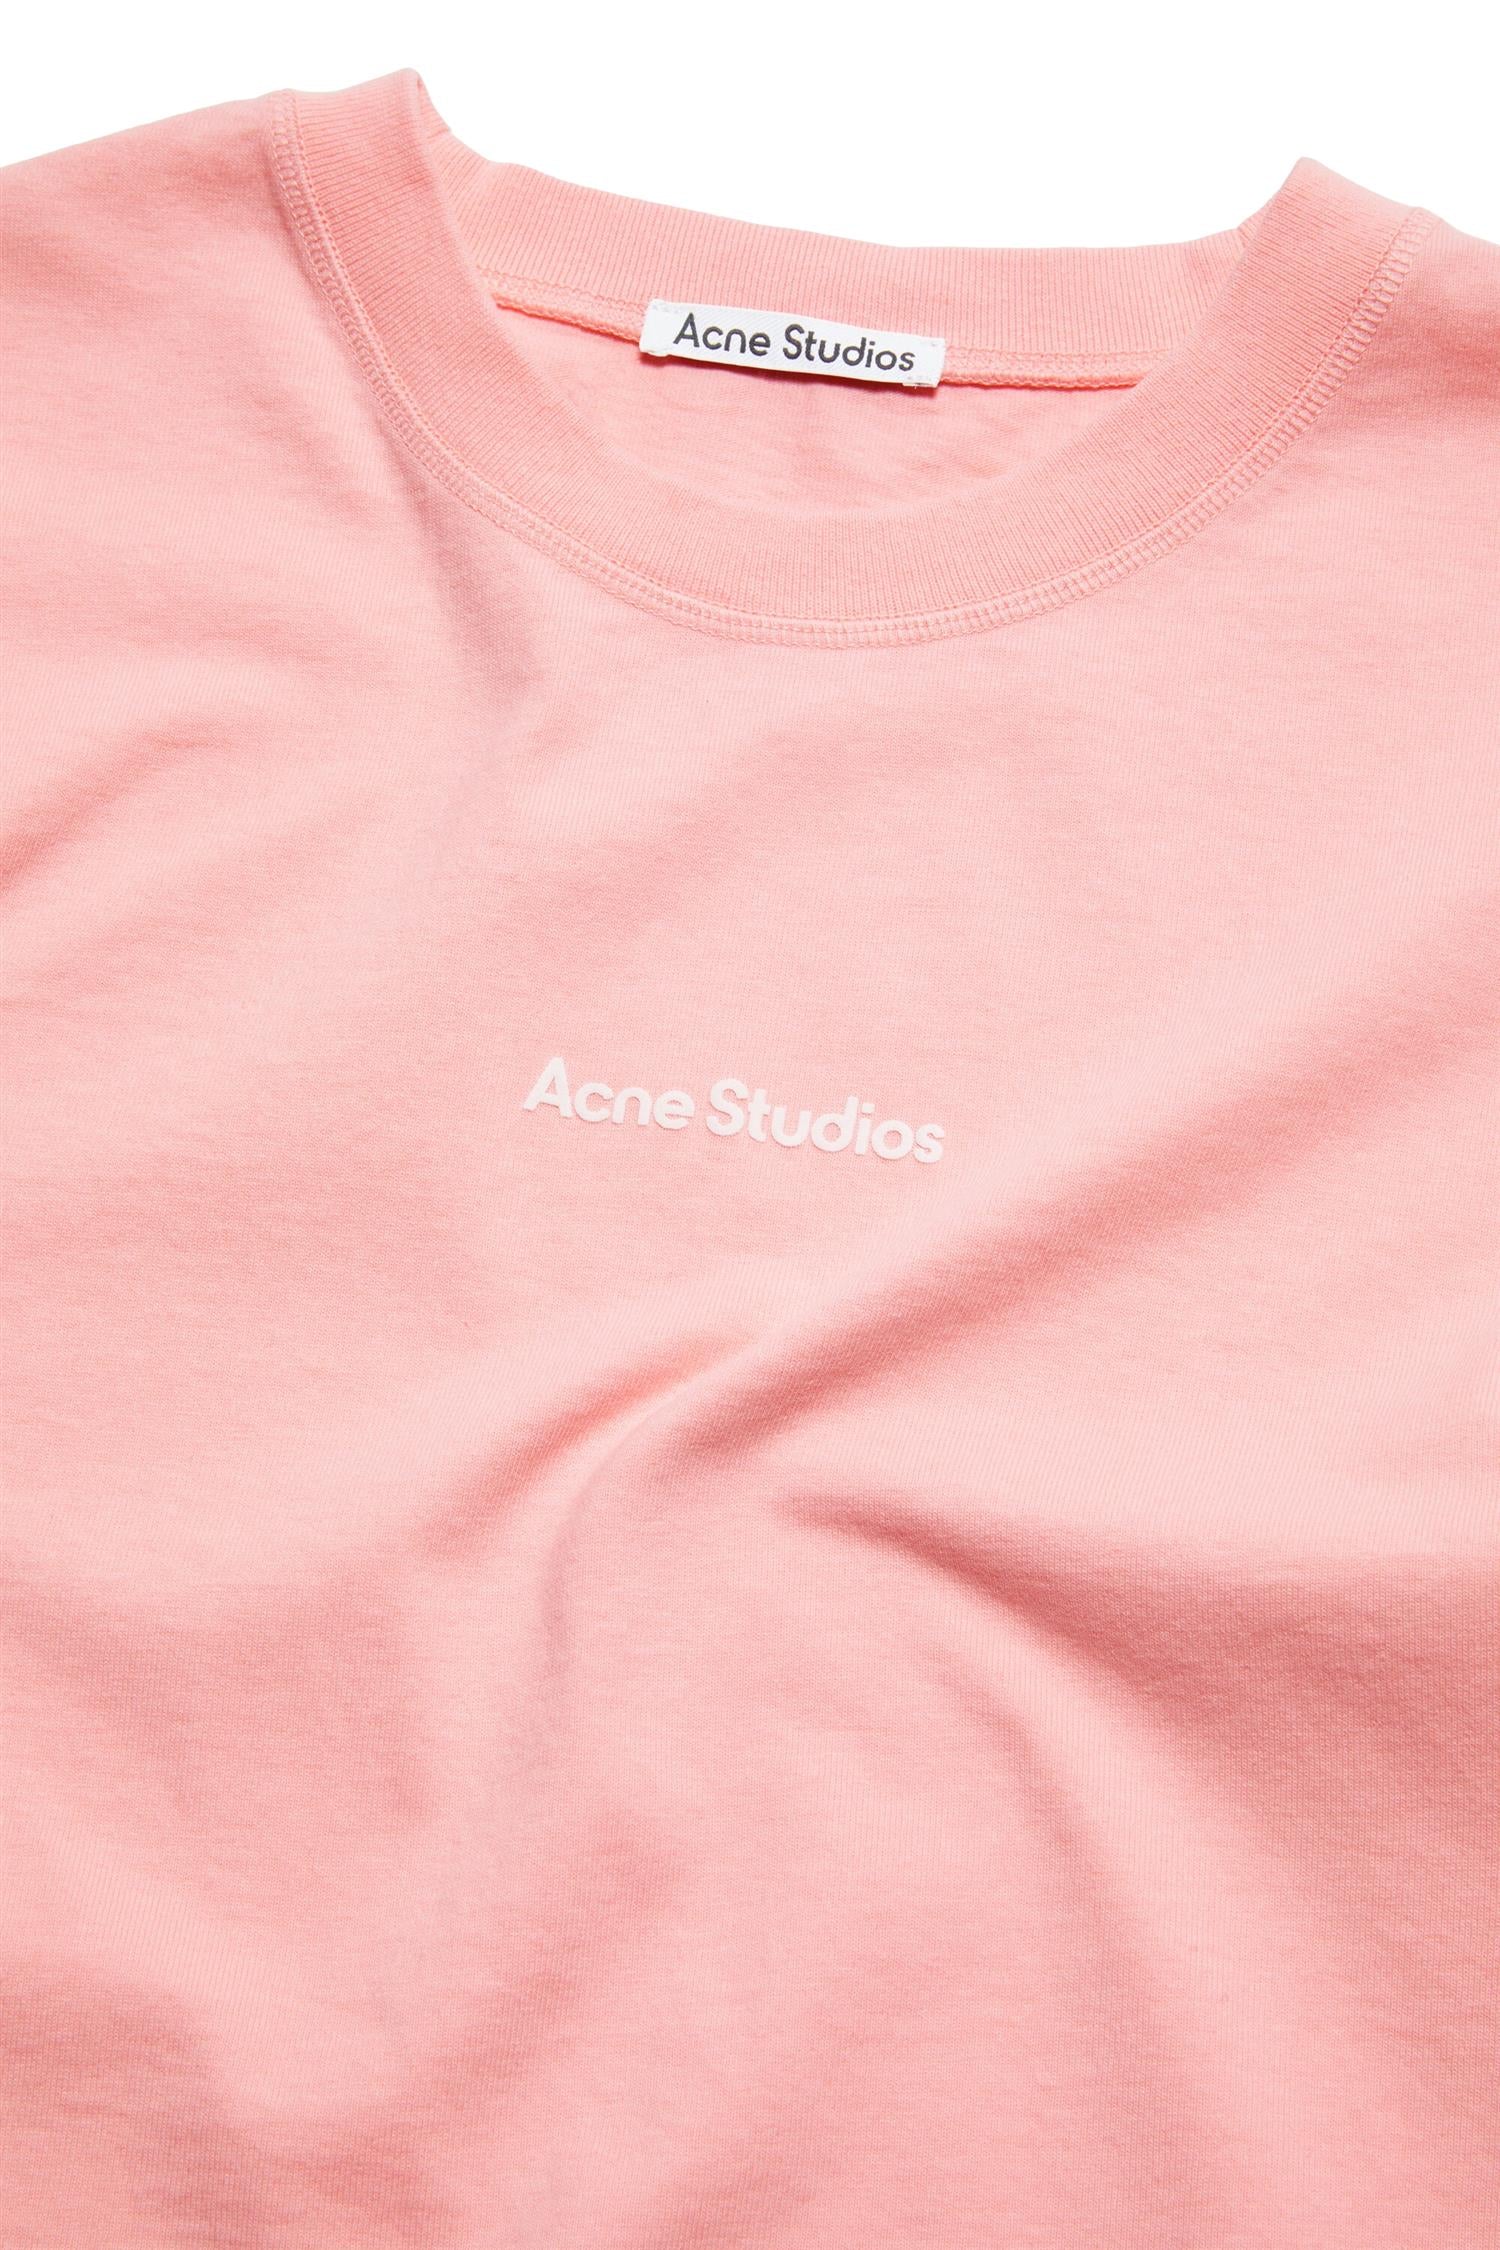 Acne Stamp Logo T-shirt T-shirt Lys Rosa - [modostore.no]